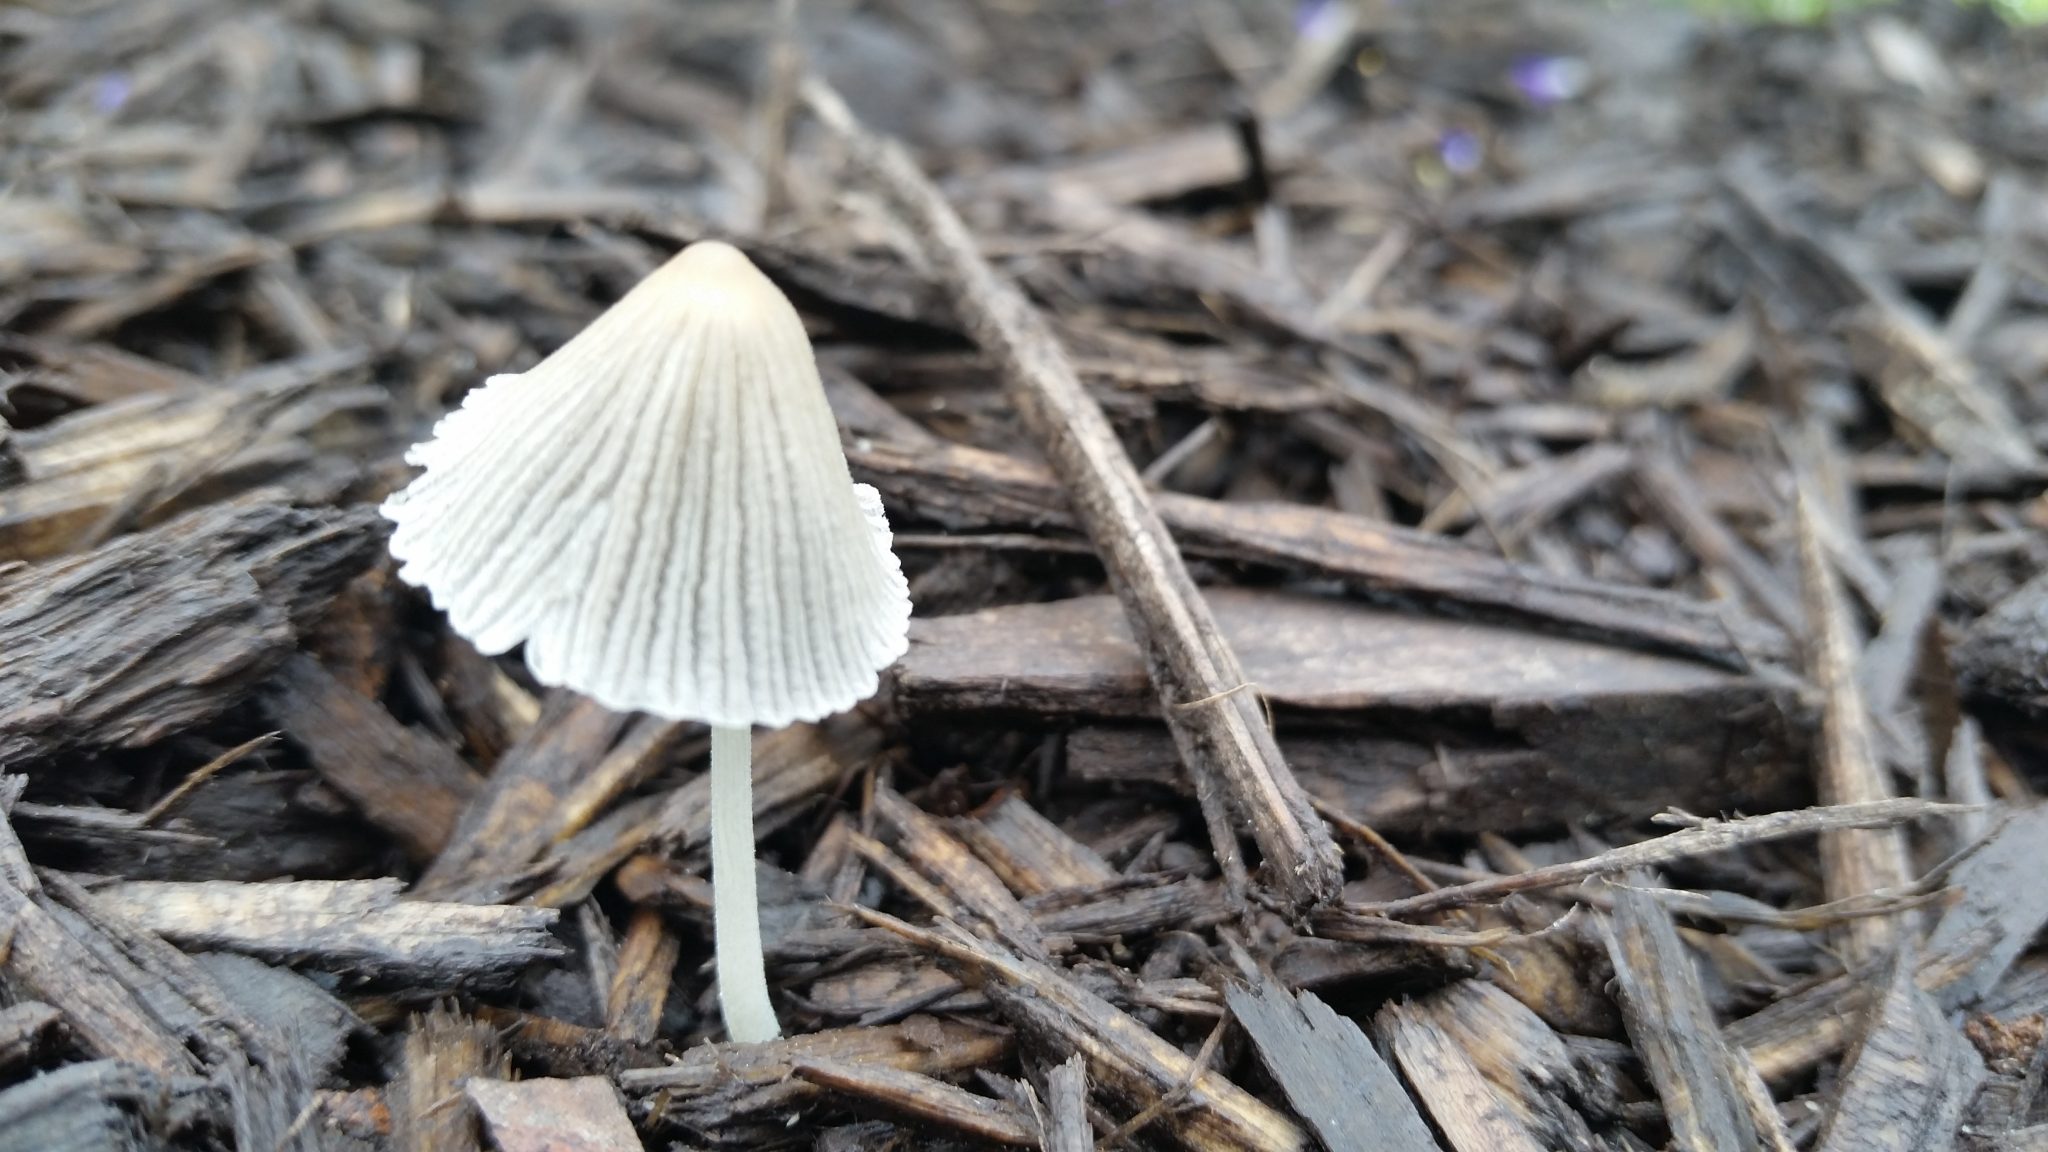 Half-opened mushroom